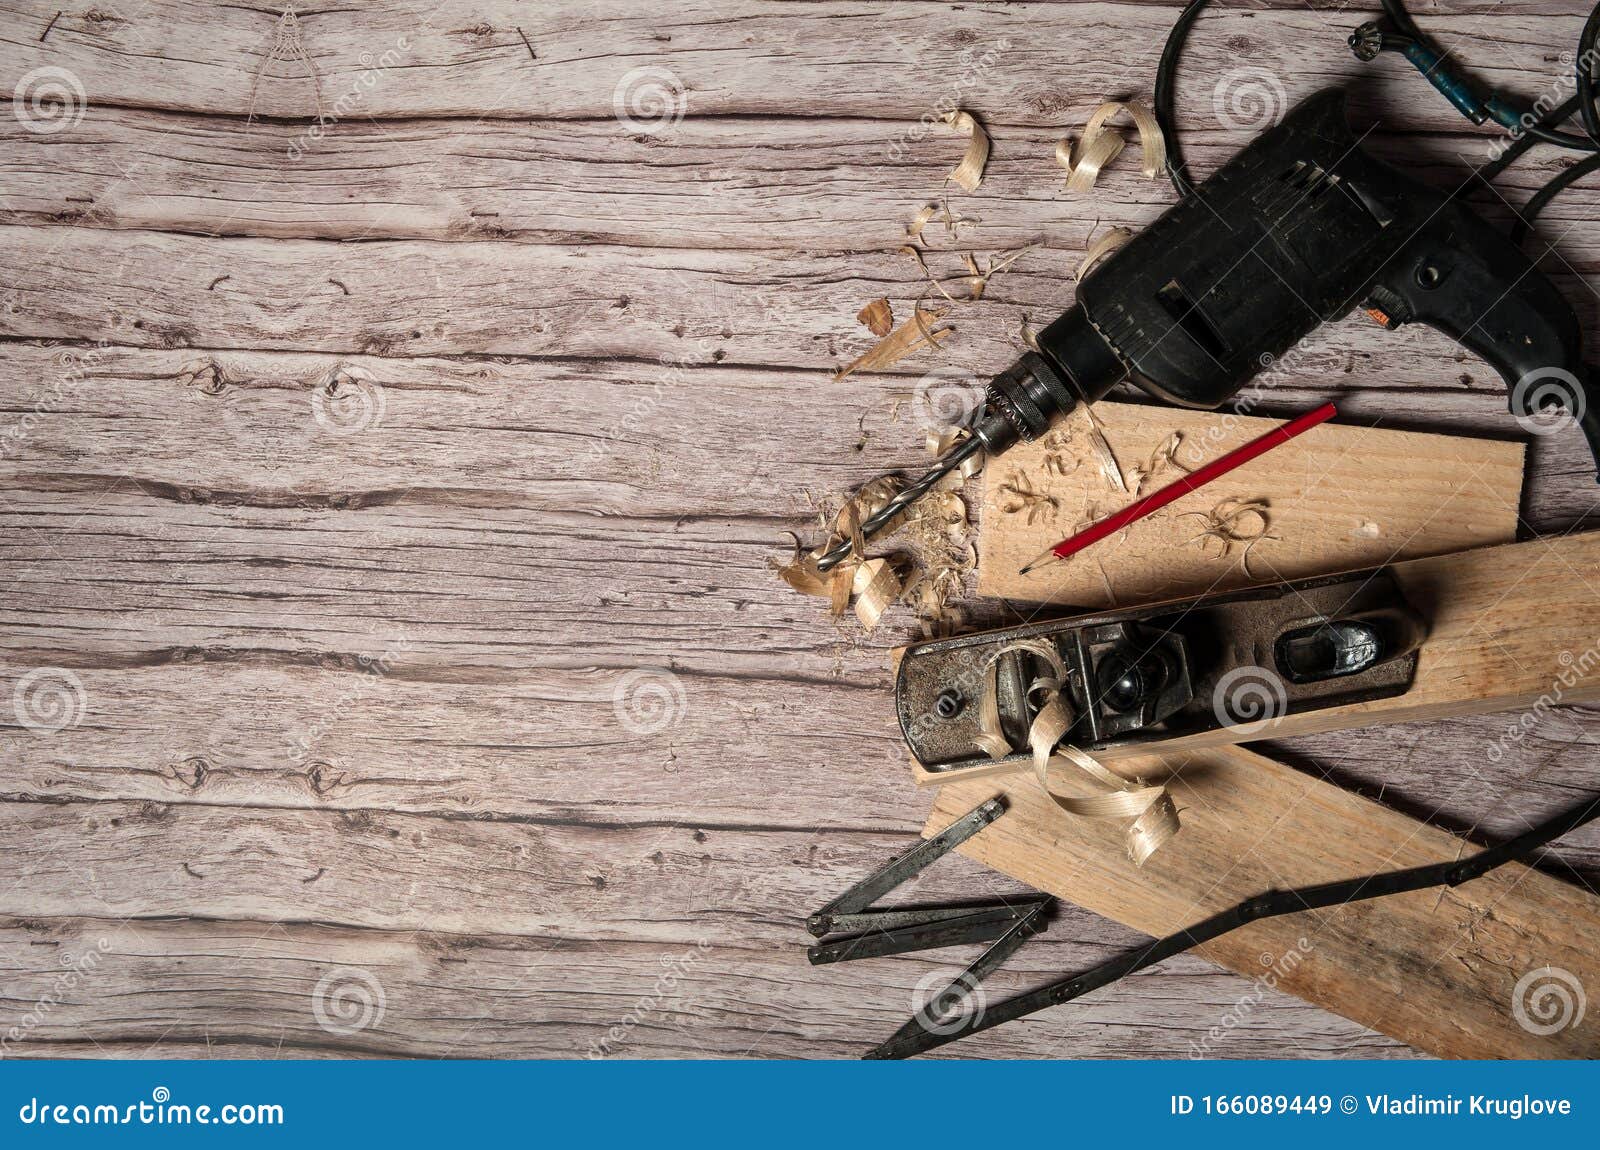 Outil de travail d'un charpentier Ancienne menuiserie en métal, plieuse, perceuse électrique, crayon, planches et rasages sur fond de bois Espace libre pour votre texte